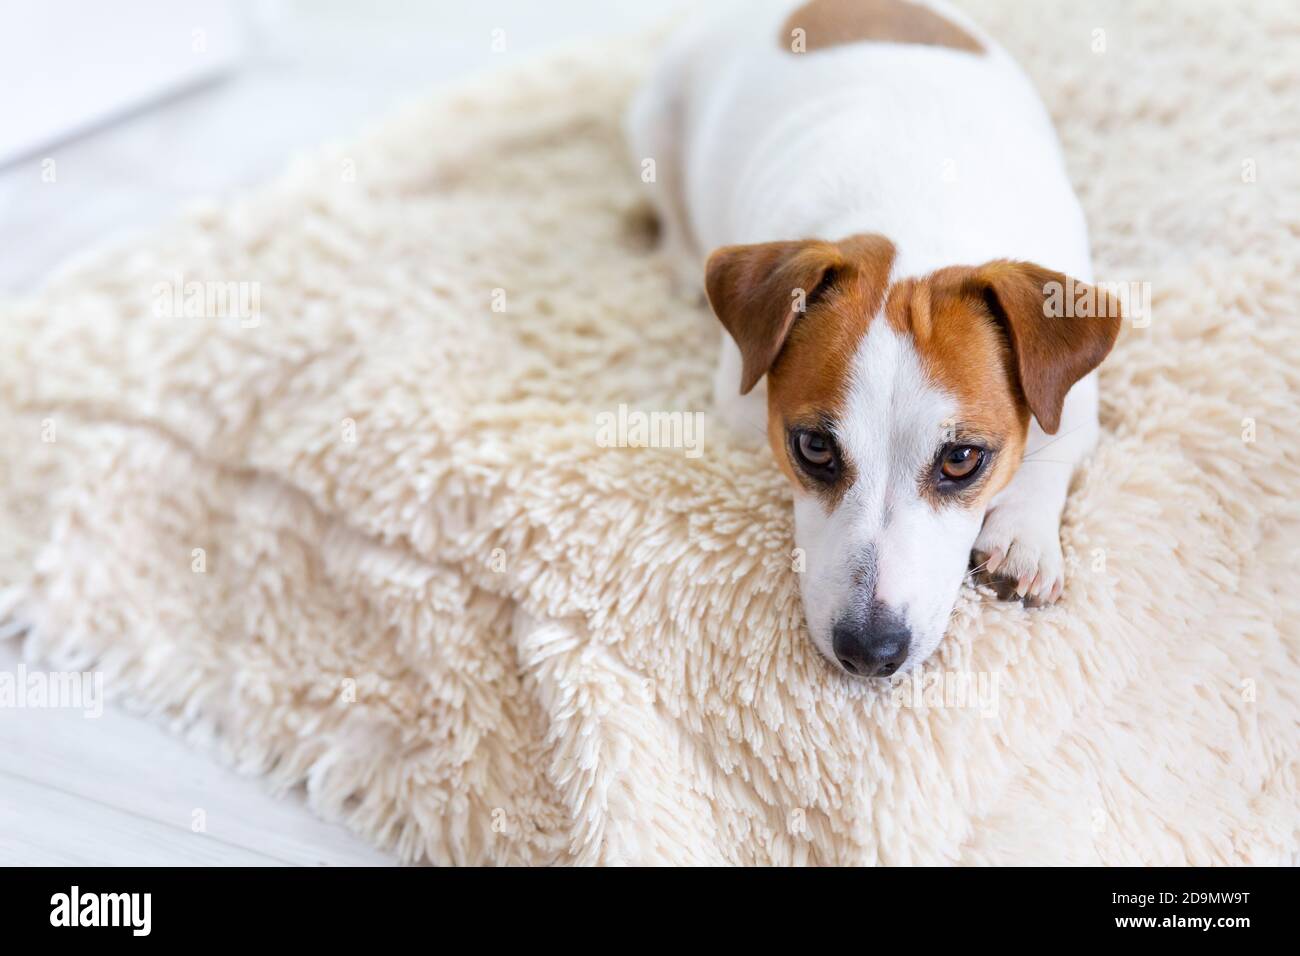 Un bel cane Jack Russell Terrier si trova sul pavimento su una soffice coperta, allunga le gambe in avanti, guarda la macchina fotografica. Occhi marroni, naso nero. Cane d Foto Stock